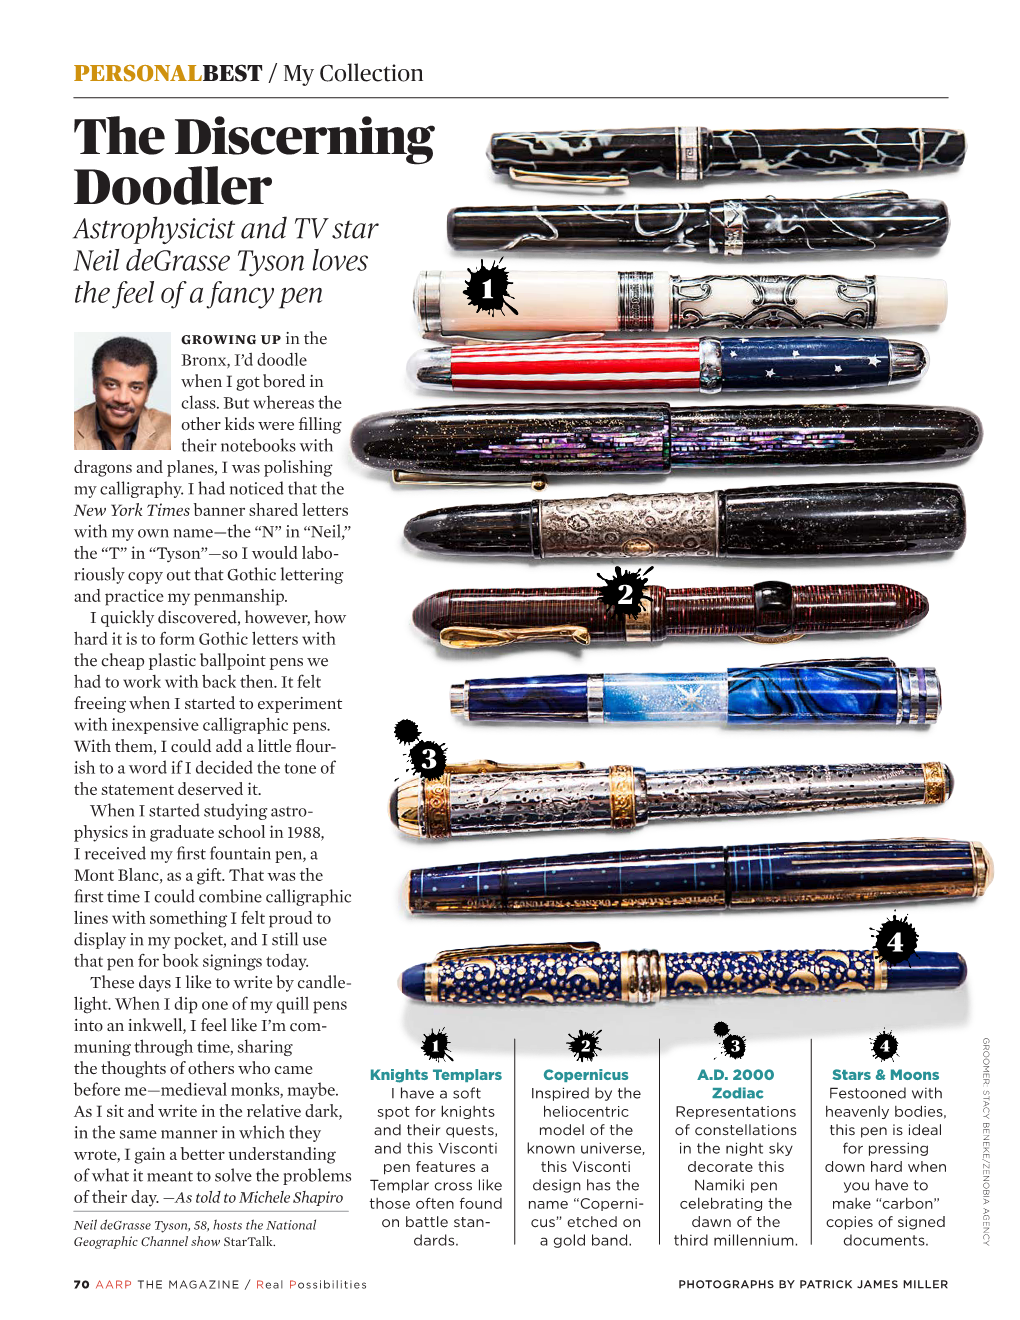 The Discerning Doodler Astrophysicist and TV Star Neil Degrasse Tyson Loves the Feel of a Fancy Pen 1